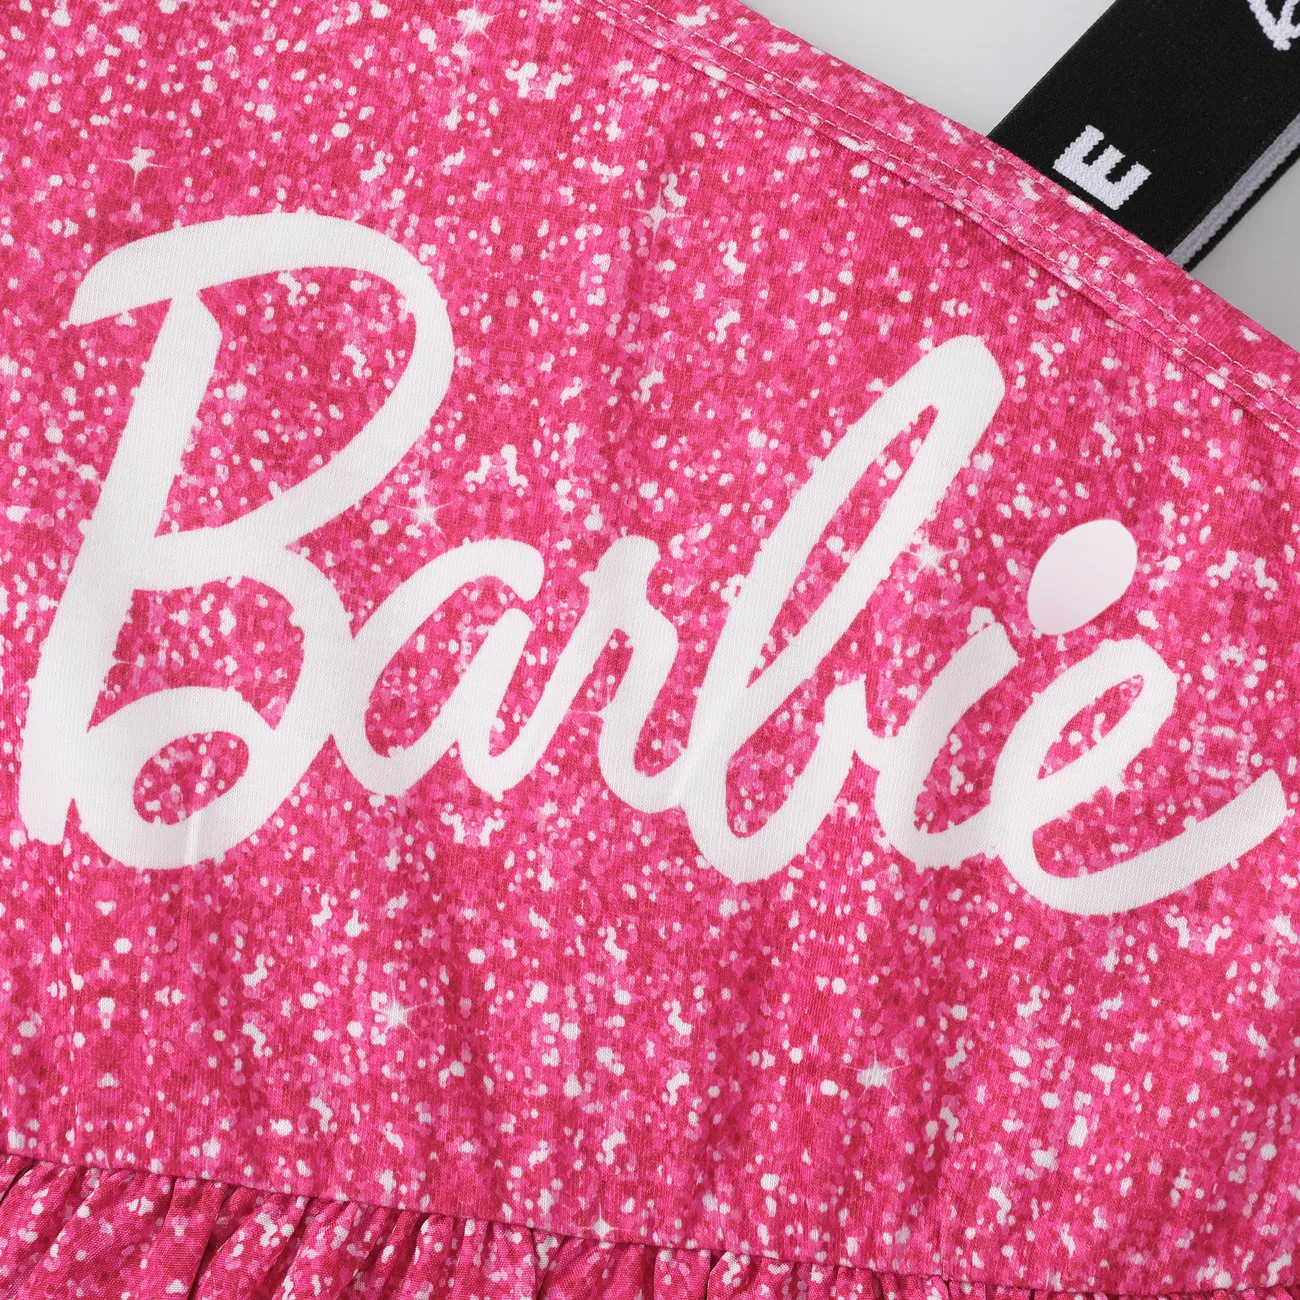 Barbie Toddler/Kid Girls 1pc One shouder desgin multi-layer Dress
 PINK-1 big image 1